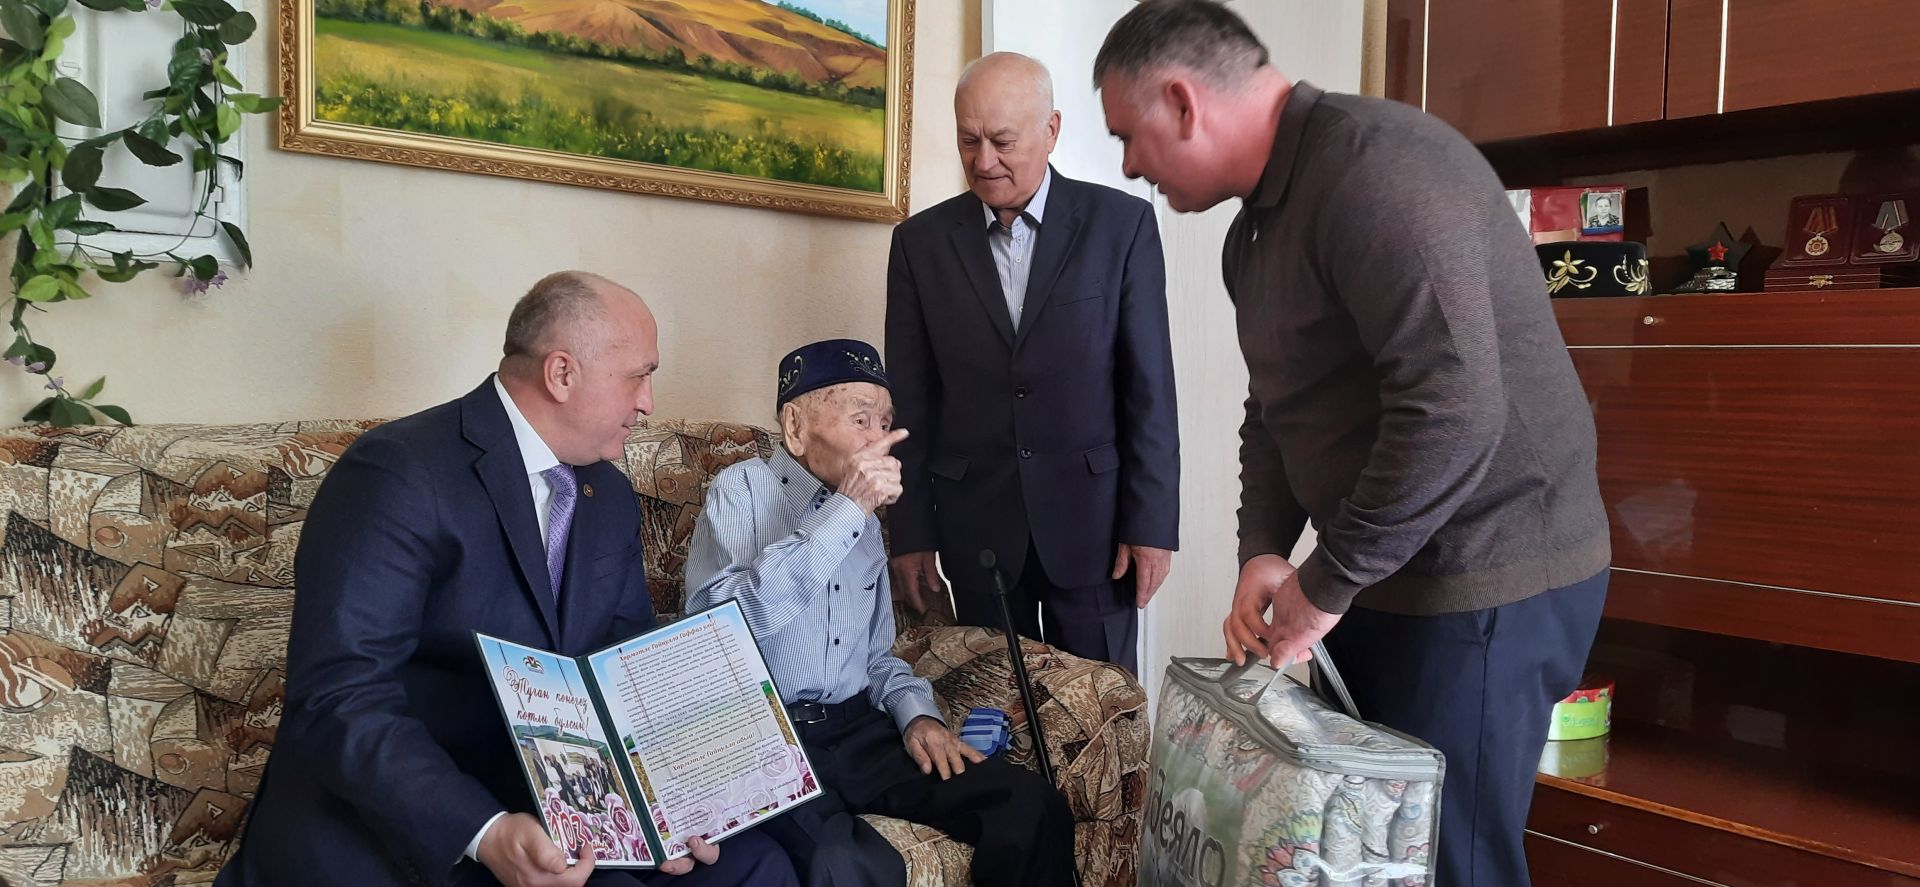 Ветеран войны из Азнакаево встретил свою 103-ю весну